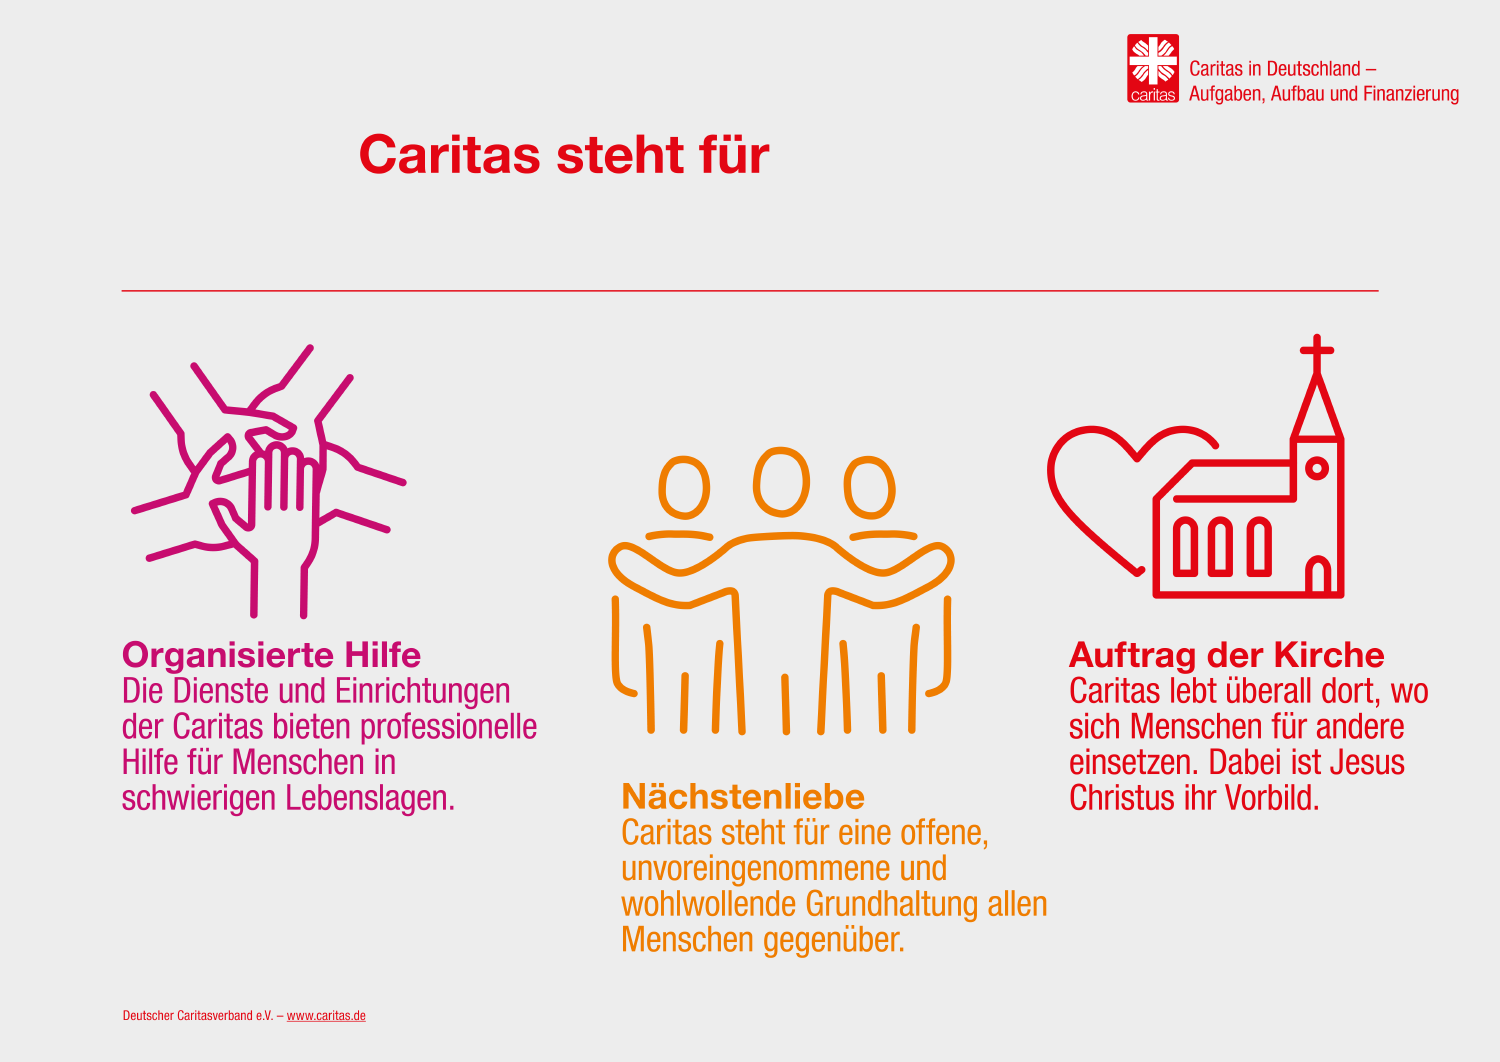 Infografik: Caritas steht für Nächstenliebe, einen Auftrag der Kirche und die organisierte Hilfe  (DCV/margo.eu)